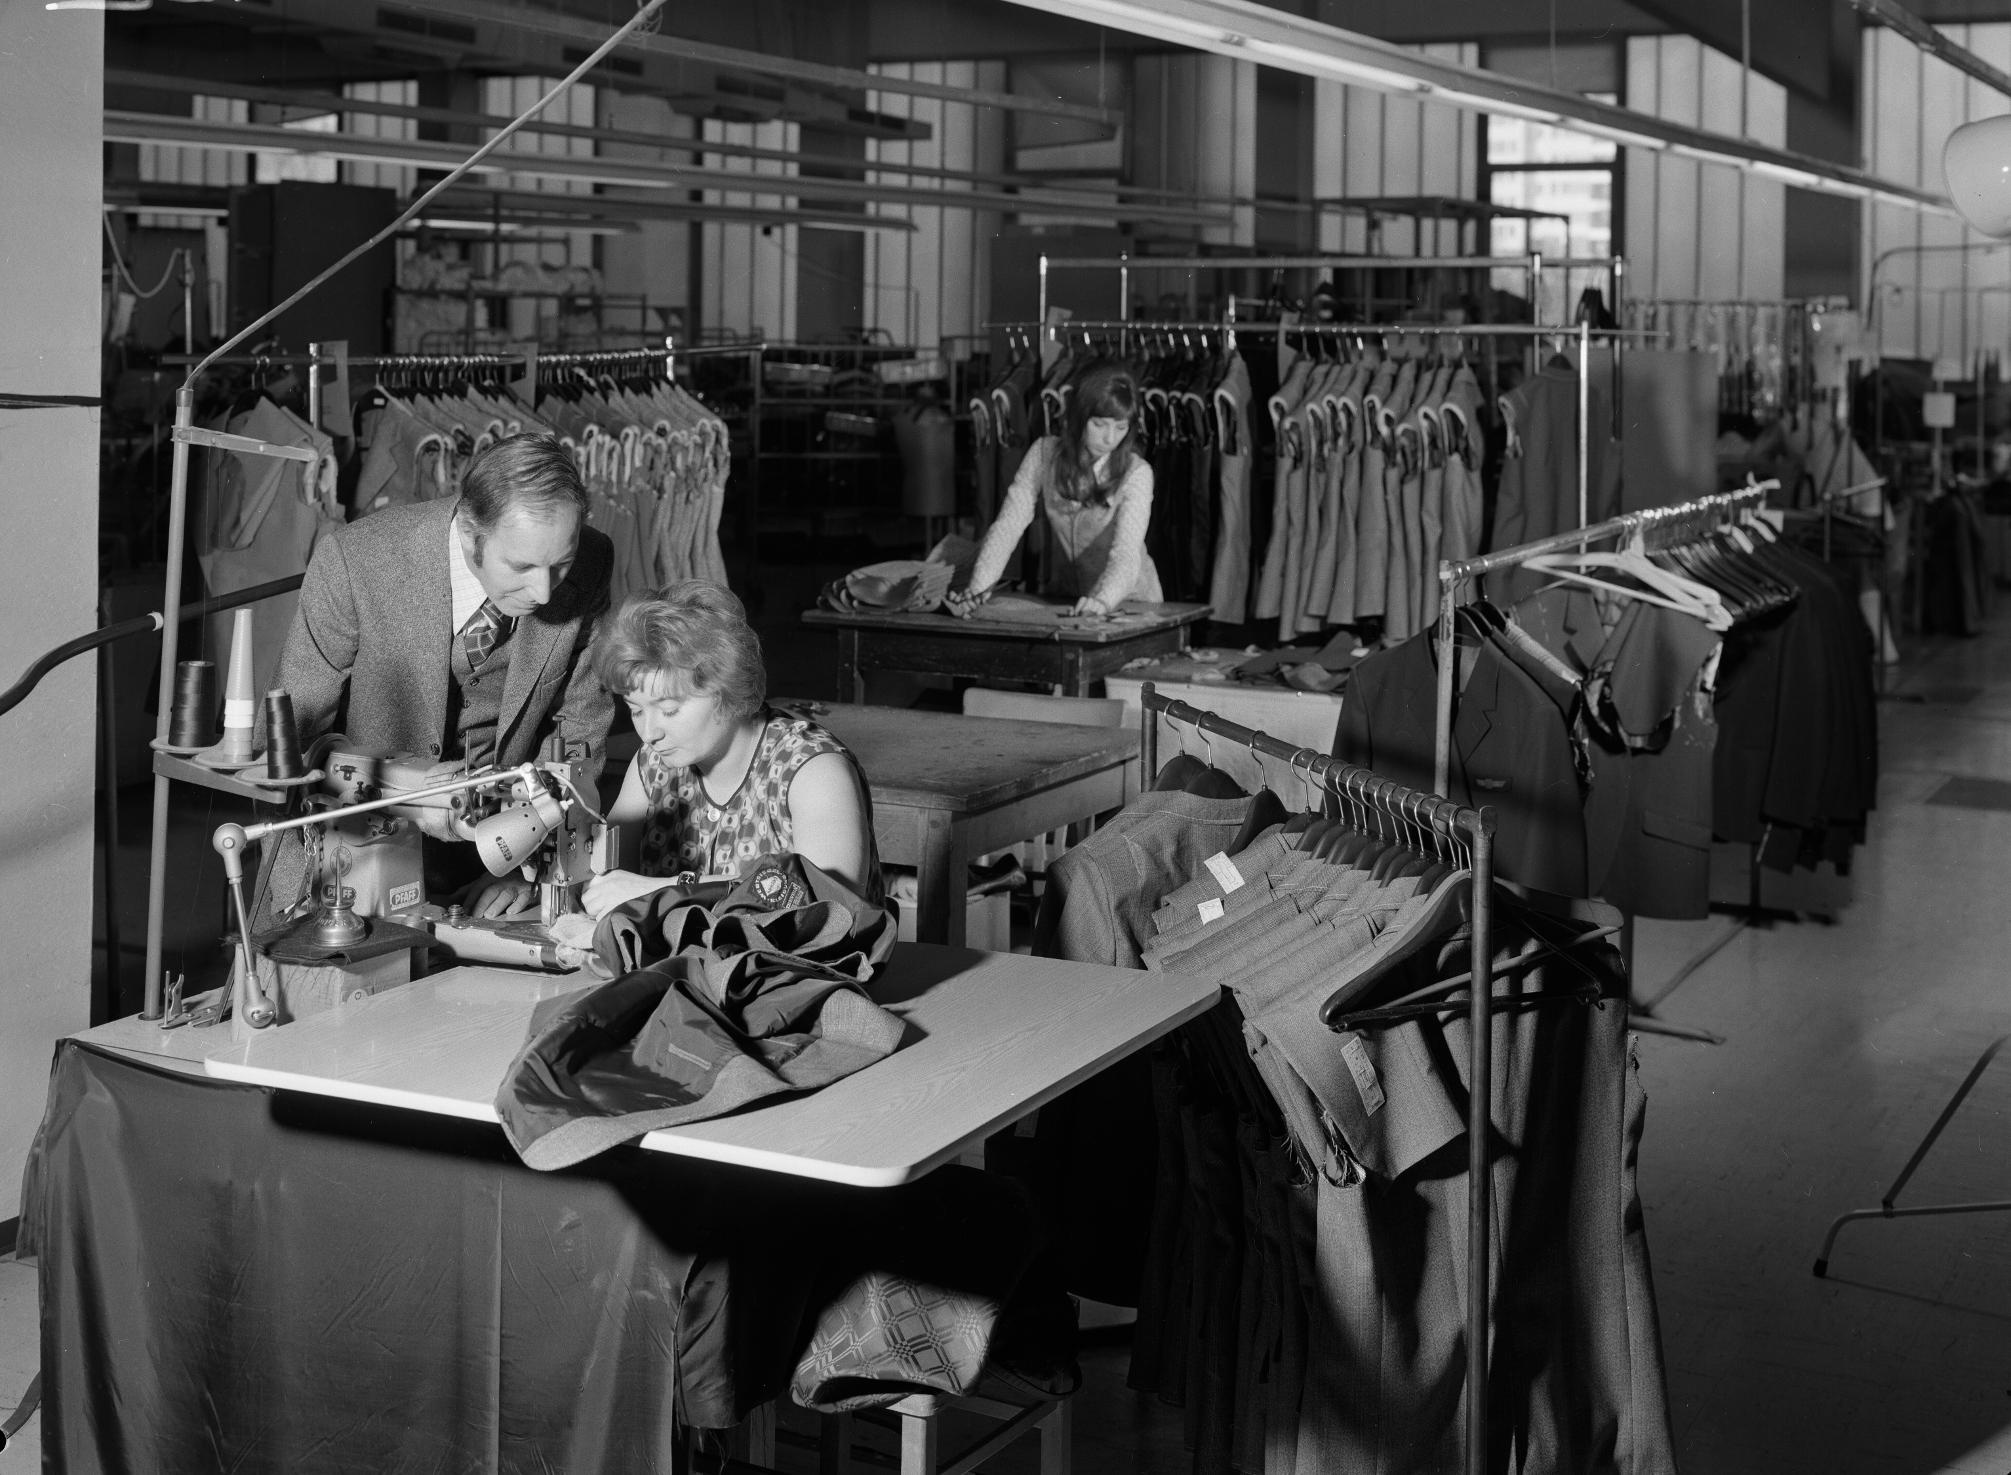 Eine Frau bedient eine Nähmaschine auf einem Schreibtisch in einer Näherei, ein Mann beugt sich über sie und sieht ihr bei der Arbeit zu. Rundherum Kleiderständer, im Hintergrund eine zweite Frau an einem Schreibtisch.  © ÖNB Bildarchiv